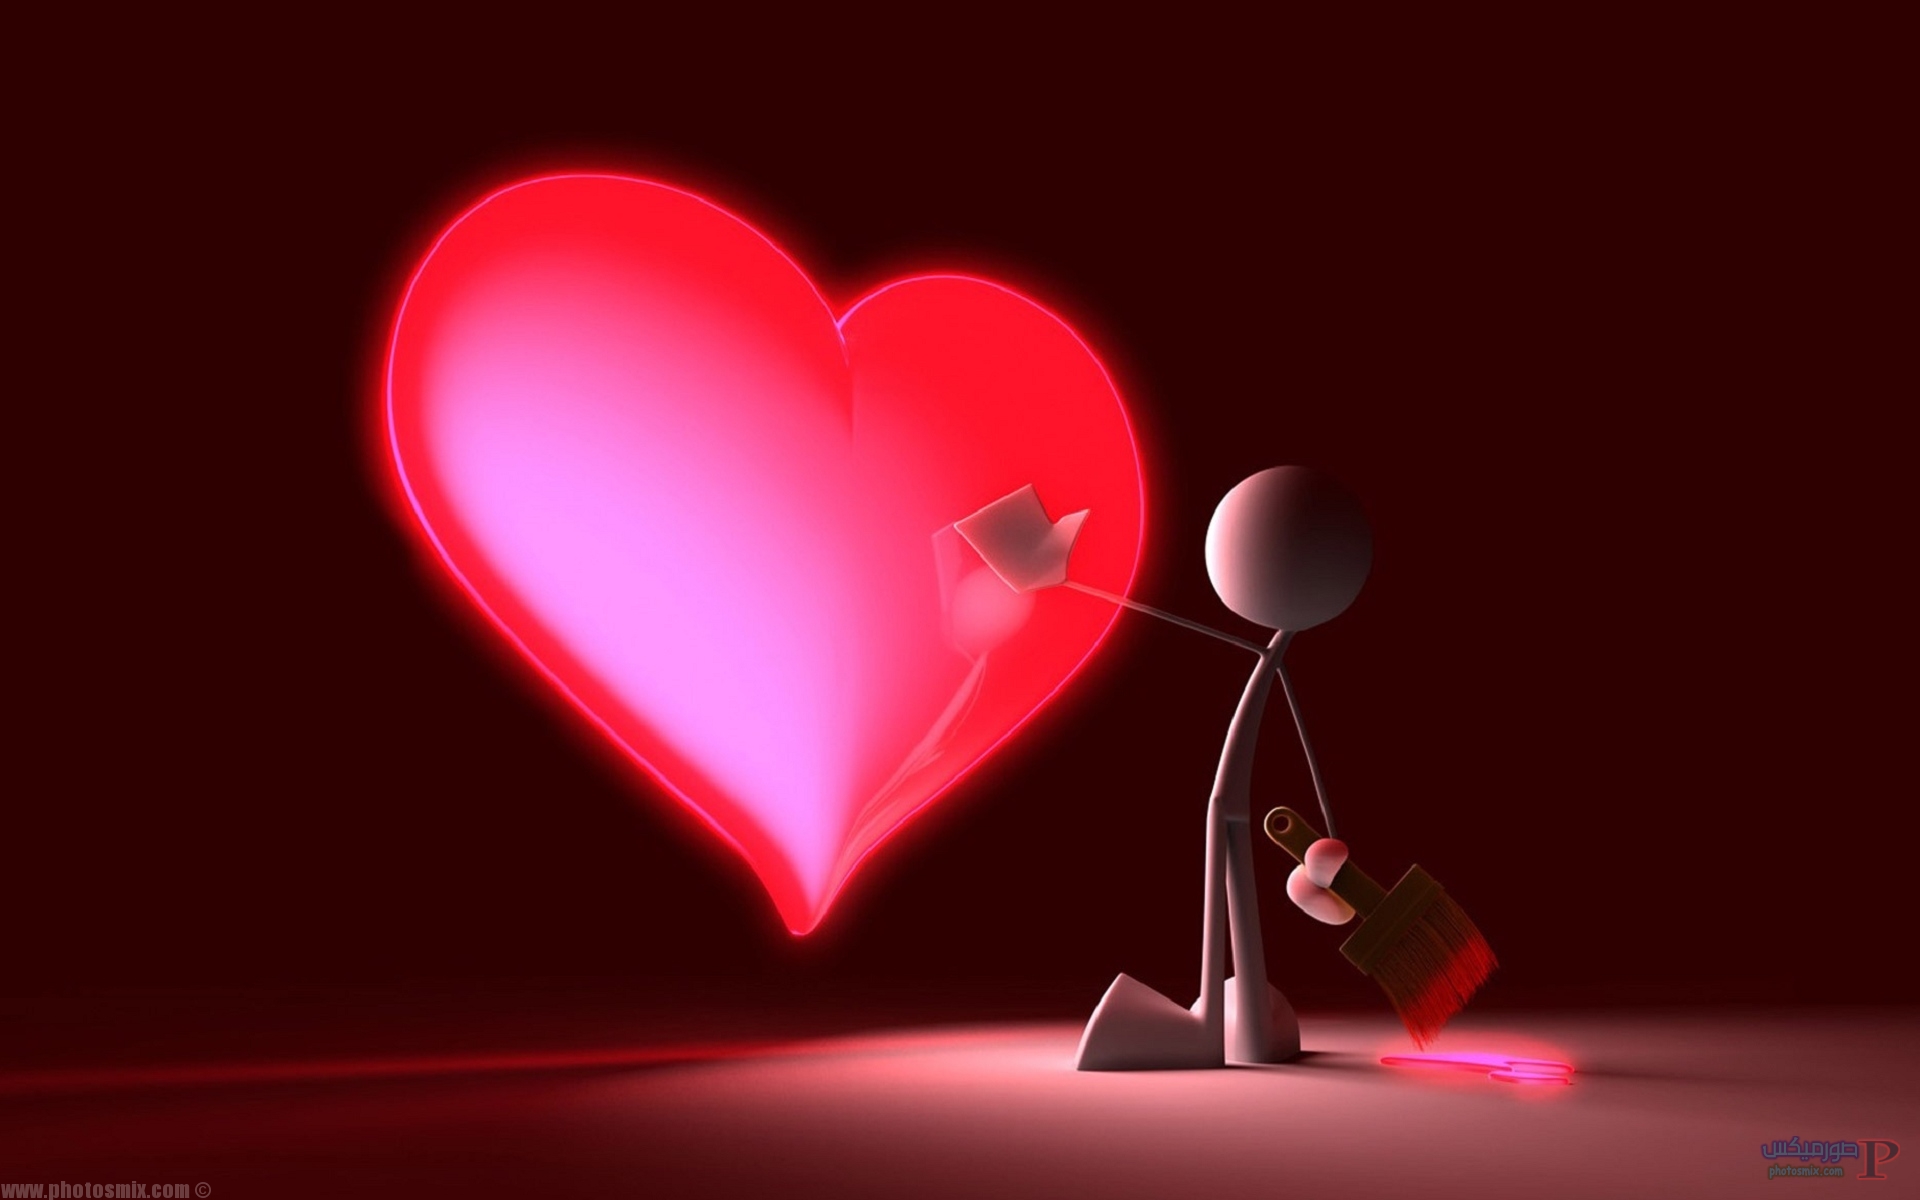 قلوب رمانسية 2